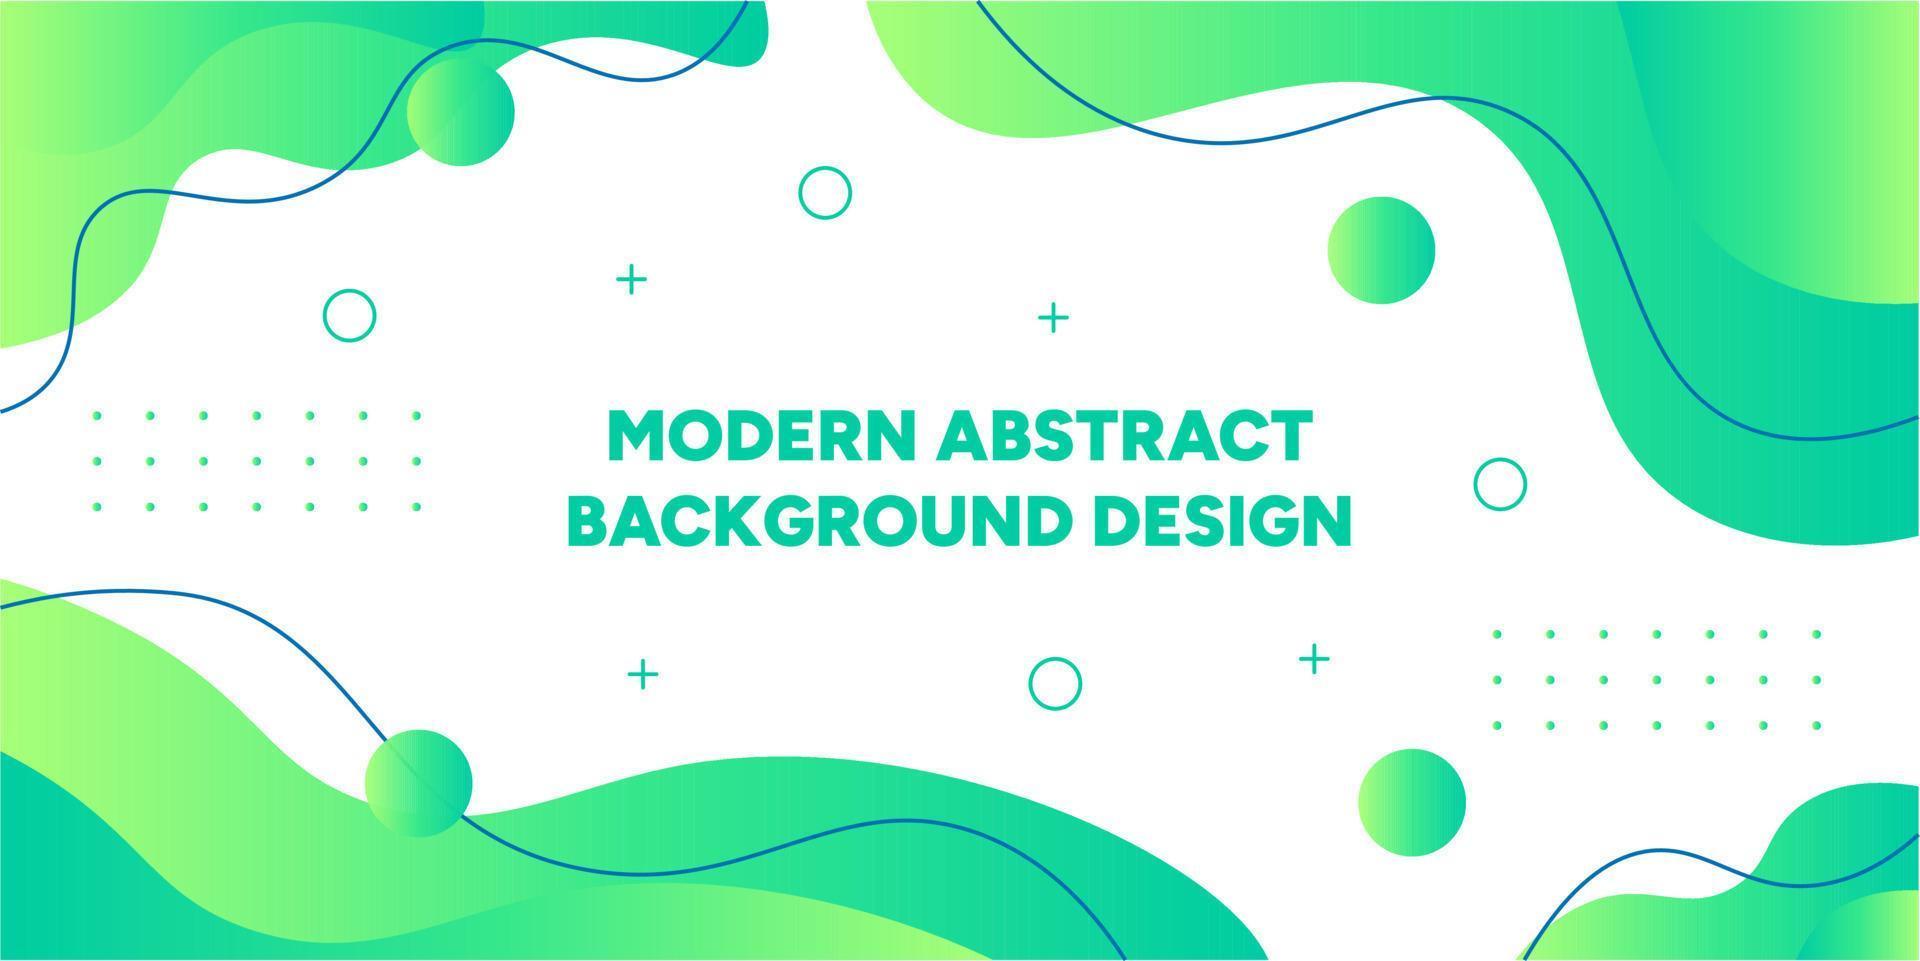 moderne abstrakte grüne Hintergrundvektor-Designschablone. gradientenlayout mit form, flüssigkeit, flüssigkeit, welle, dynamischem, geometrischem konzept. kreatives einfaches minimalistisches Banner. vektor